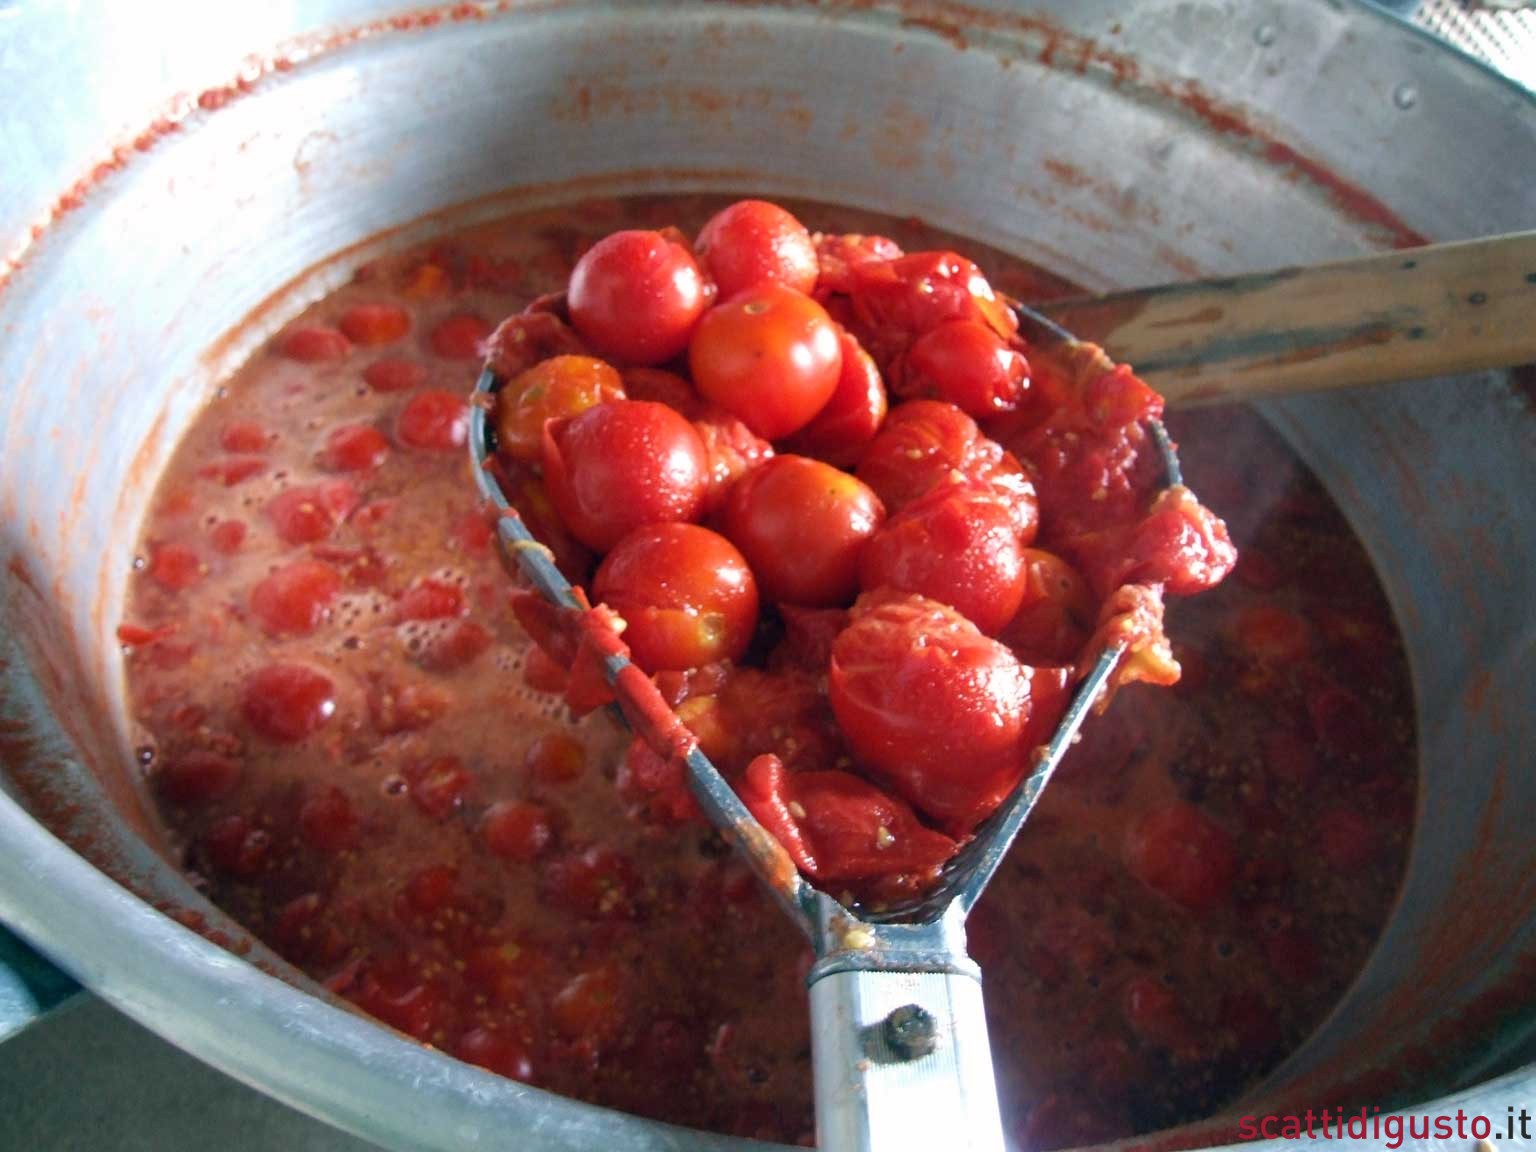 Pomodoro. Preparare a casa la salsa e la conserva, anche sotto sale